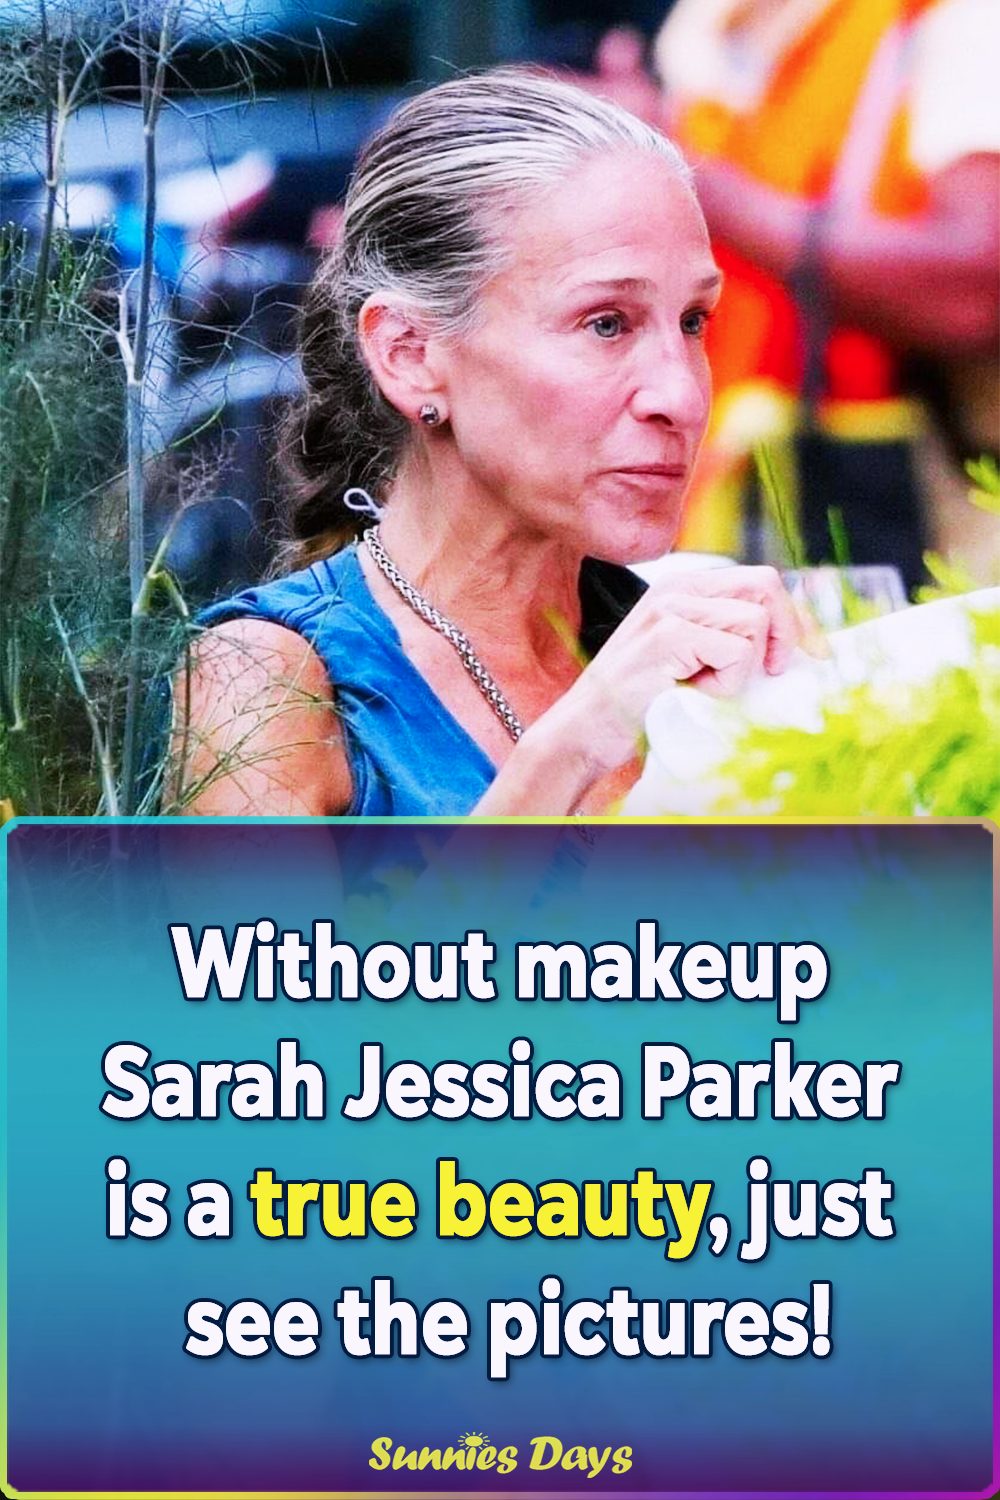 celebrities Without makeup, Sarah Jessica Parker, Sarah Jessica Parker latest picture, Sarah Jessica Parker paparazzi,